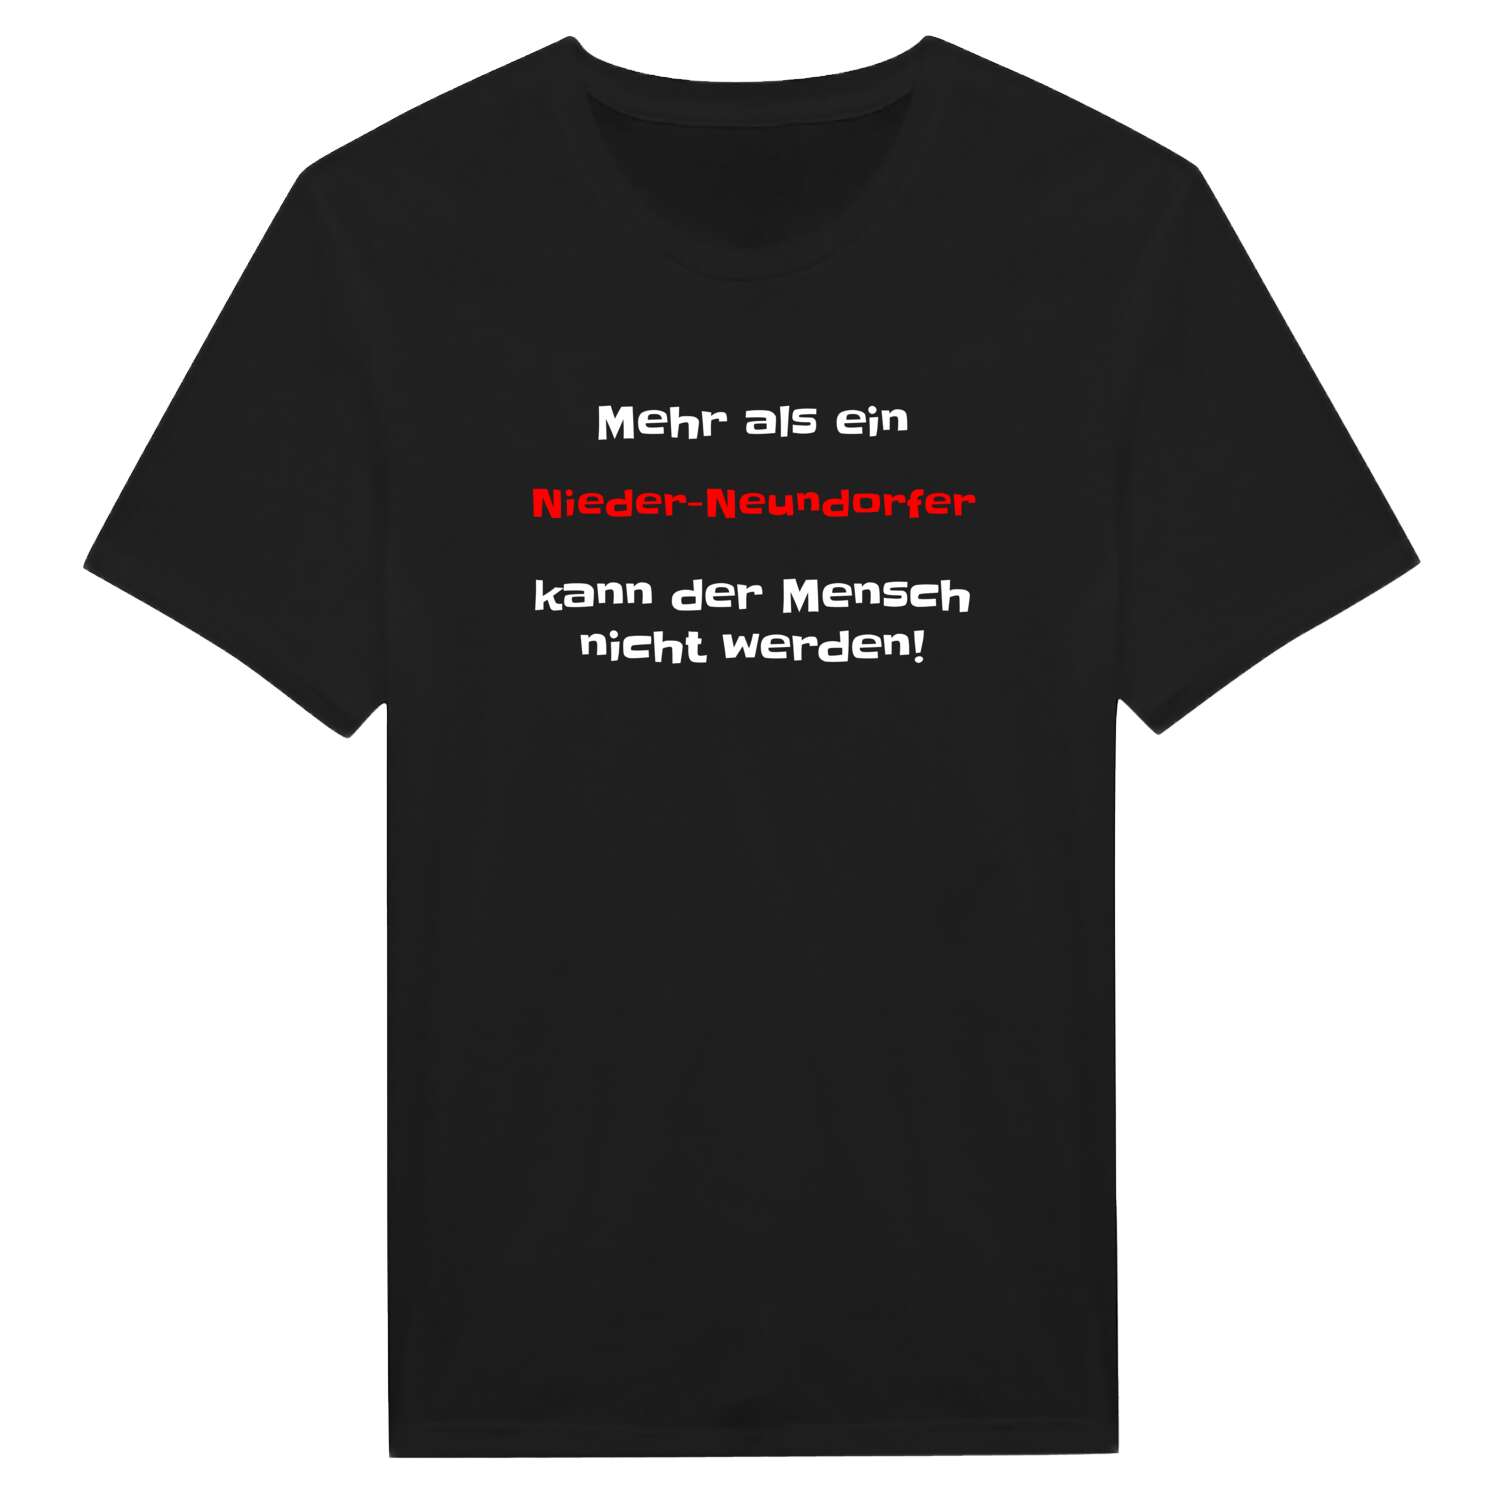 Nieder-Neundorf T-Shirt »Mehr als ein«